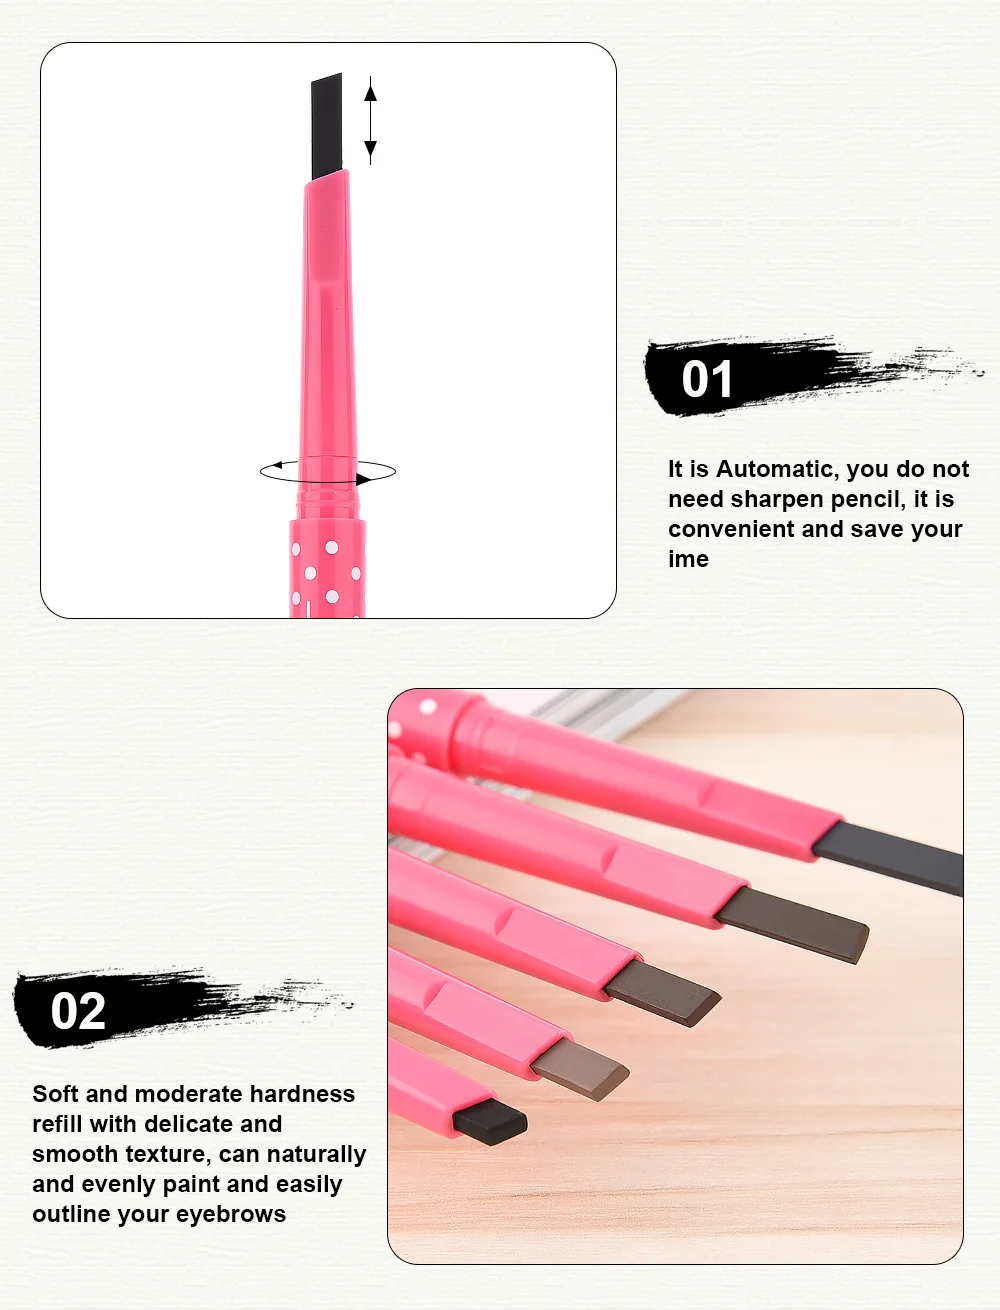 FULLJION 1 шт. карандаш для бровей долговечный водонепроницаемый прочный карандаш для бровей+ 3 трафарета для формирования бровей Набор инструментов для ухода за волосами